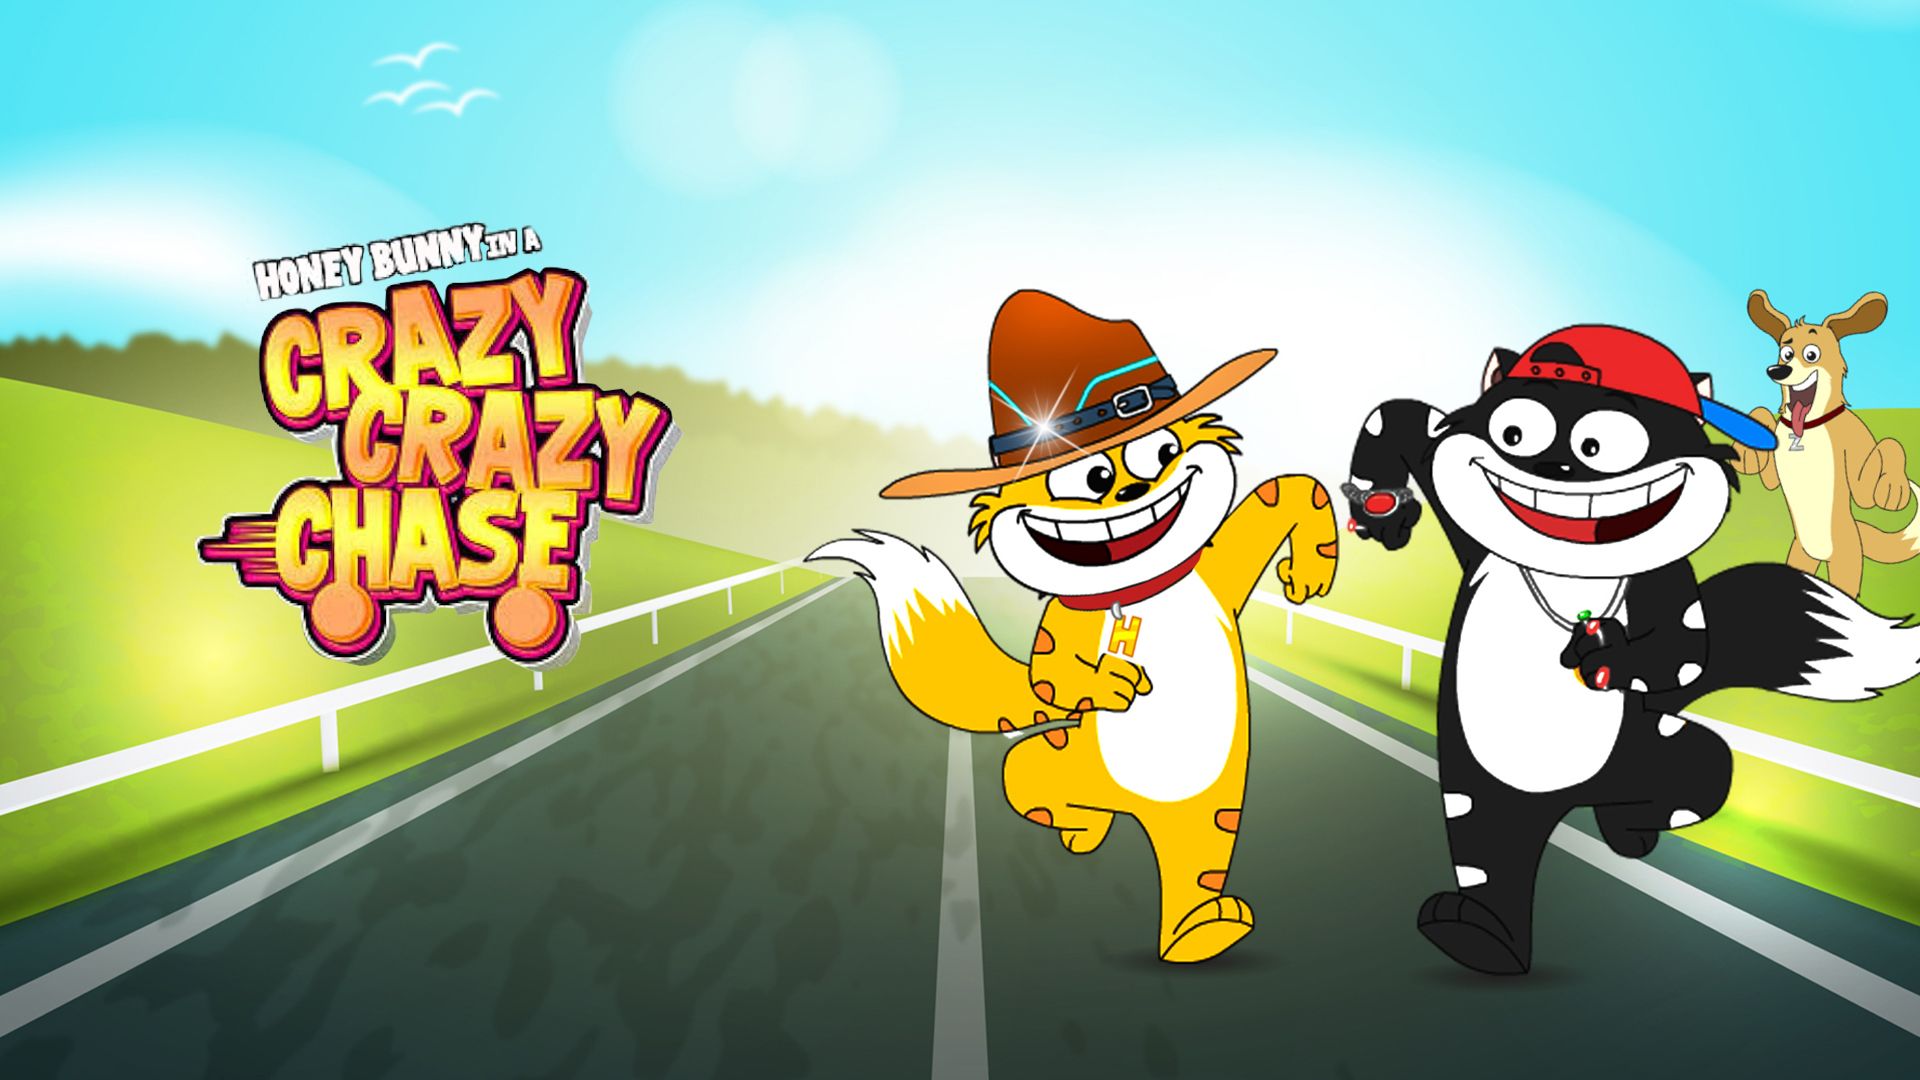 Honey Bunny on Crazy Crazy Chase